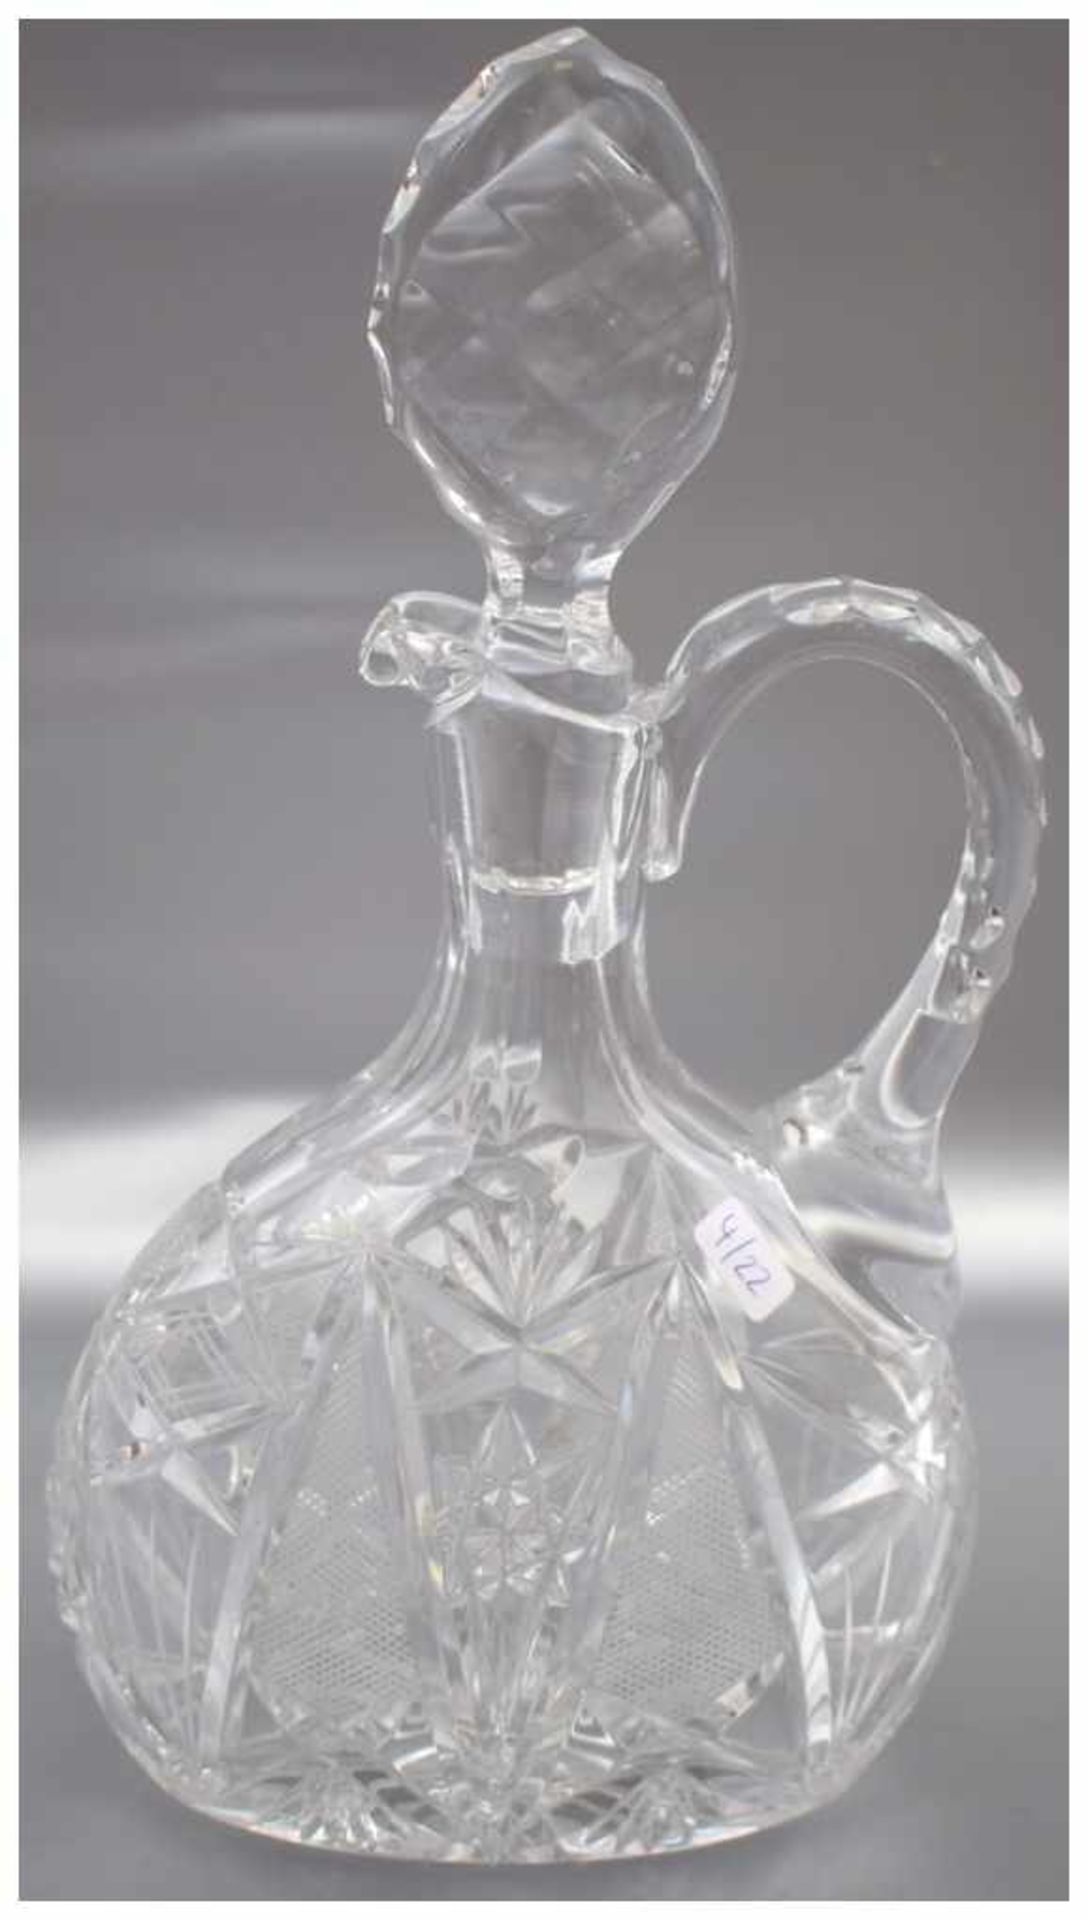 Karaffe farbl. Kristallglas, geschliffen verziert, oval, H 27 cm